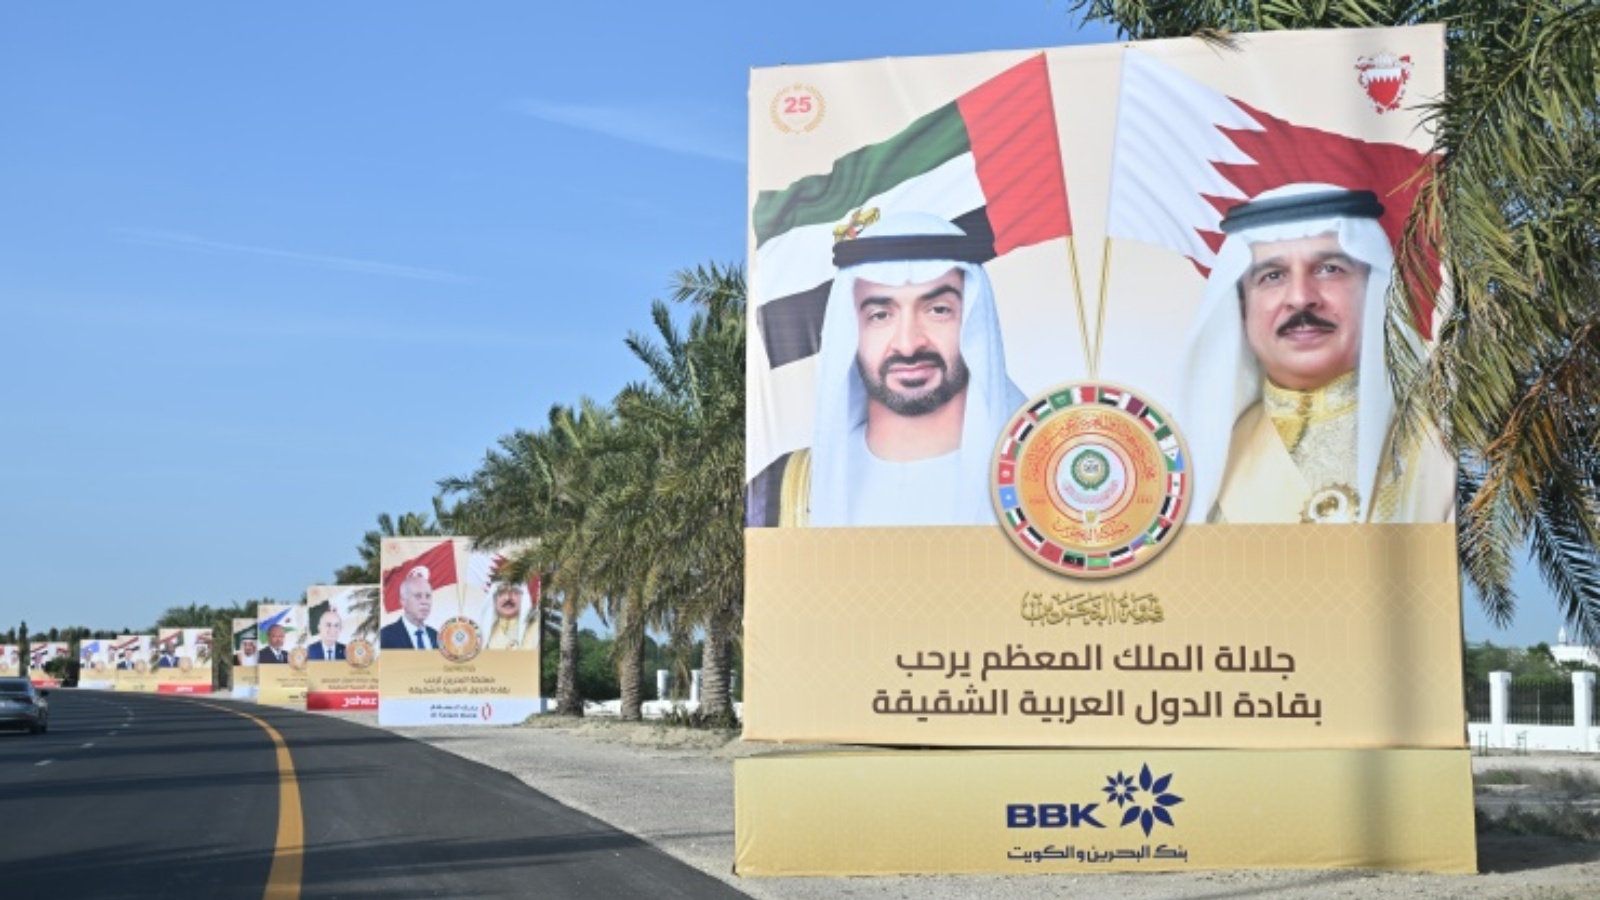 صور كبيرة على جانب بعض طرقات المنامة تحمل كل منها صورة لزعيم عربي بجانب صورة ملك البحرين